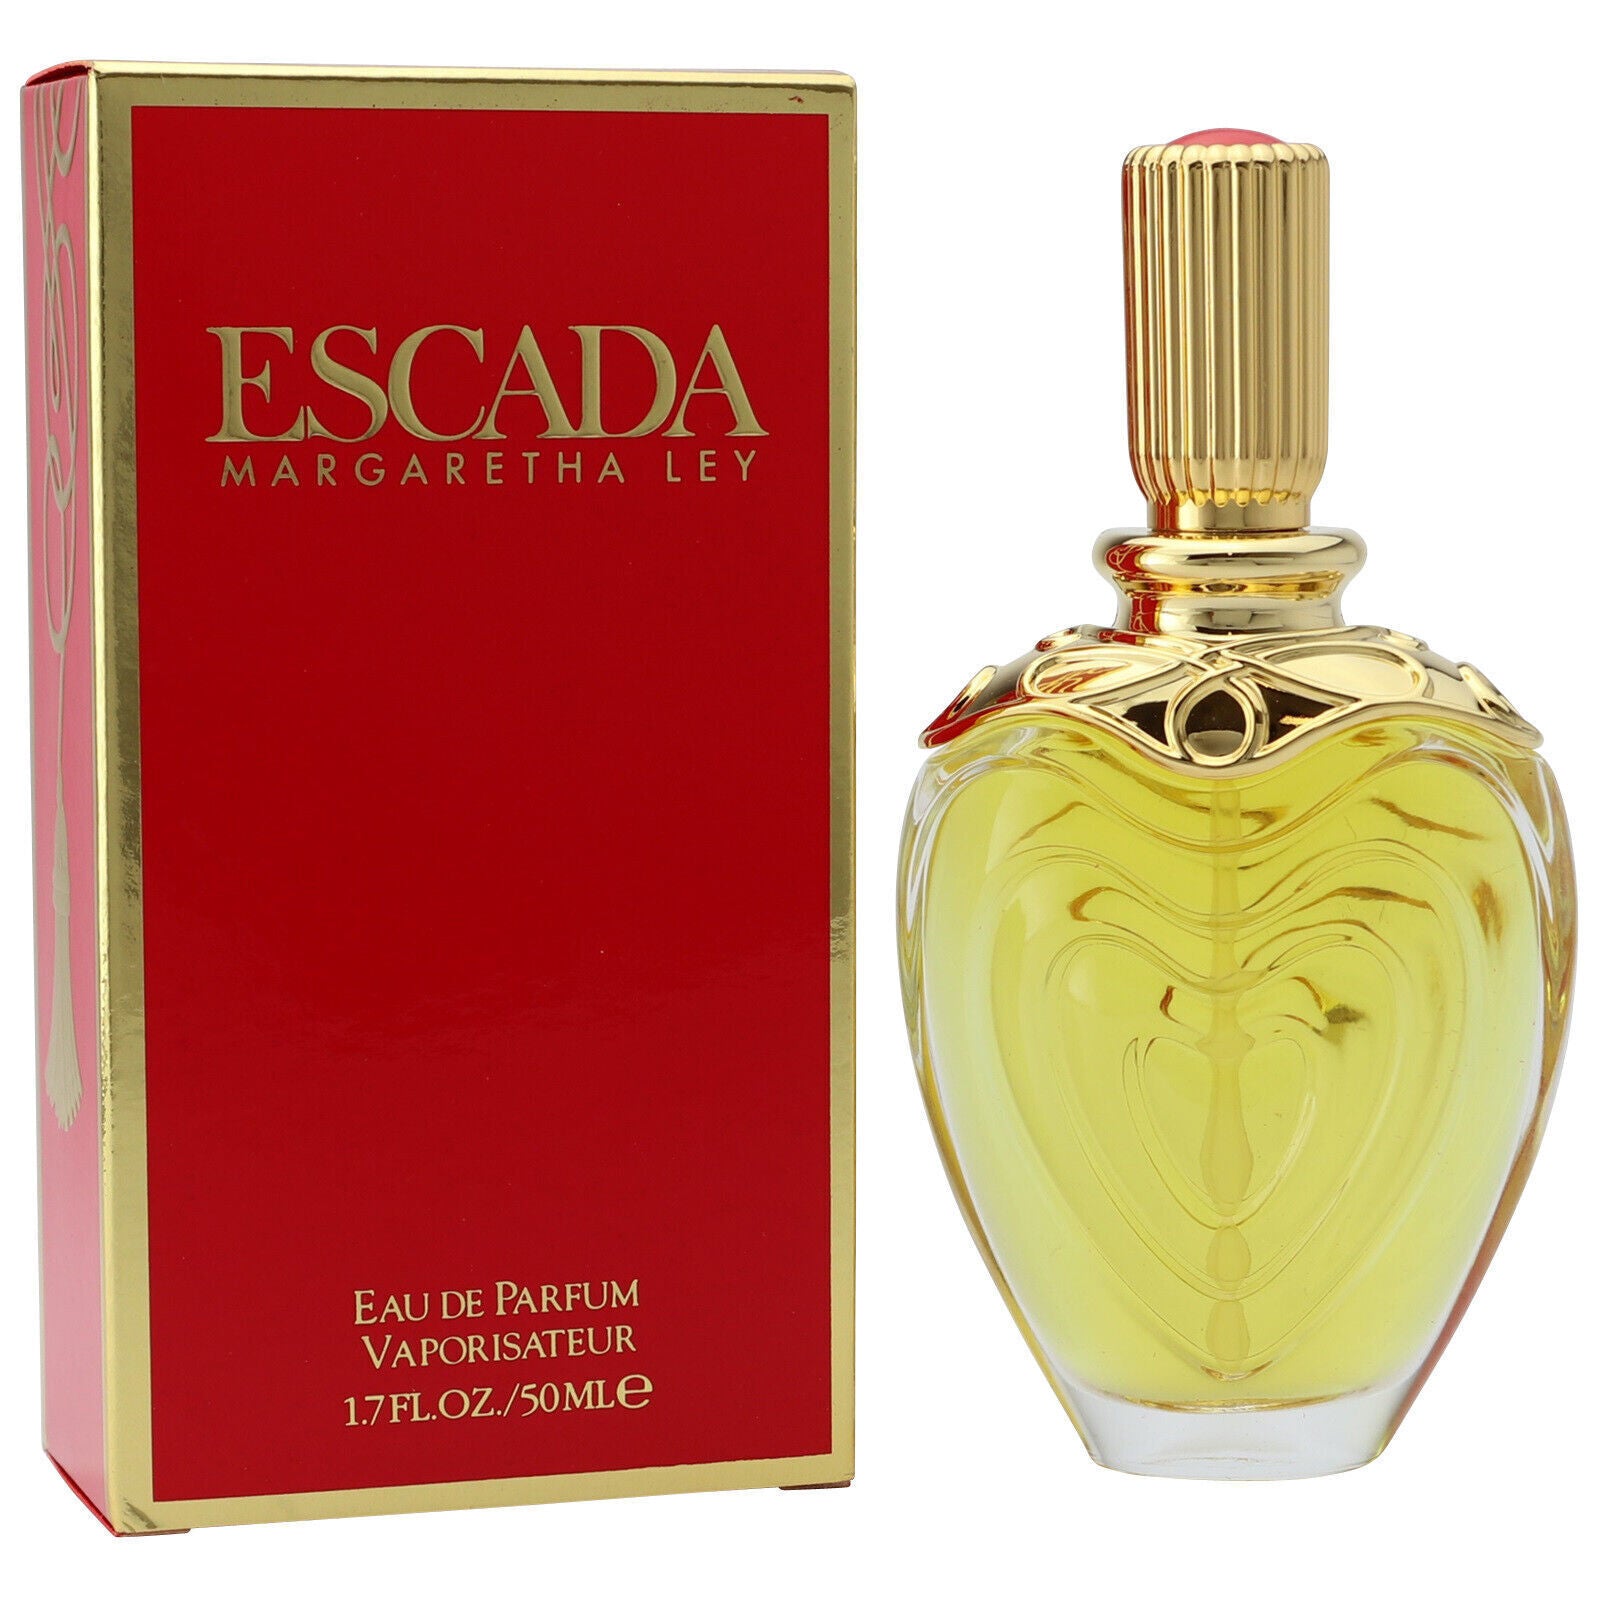 Escada ESCADA classic eau de parfum - F Vault